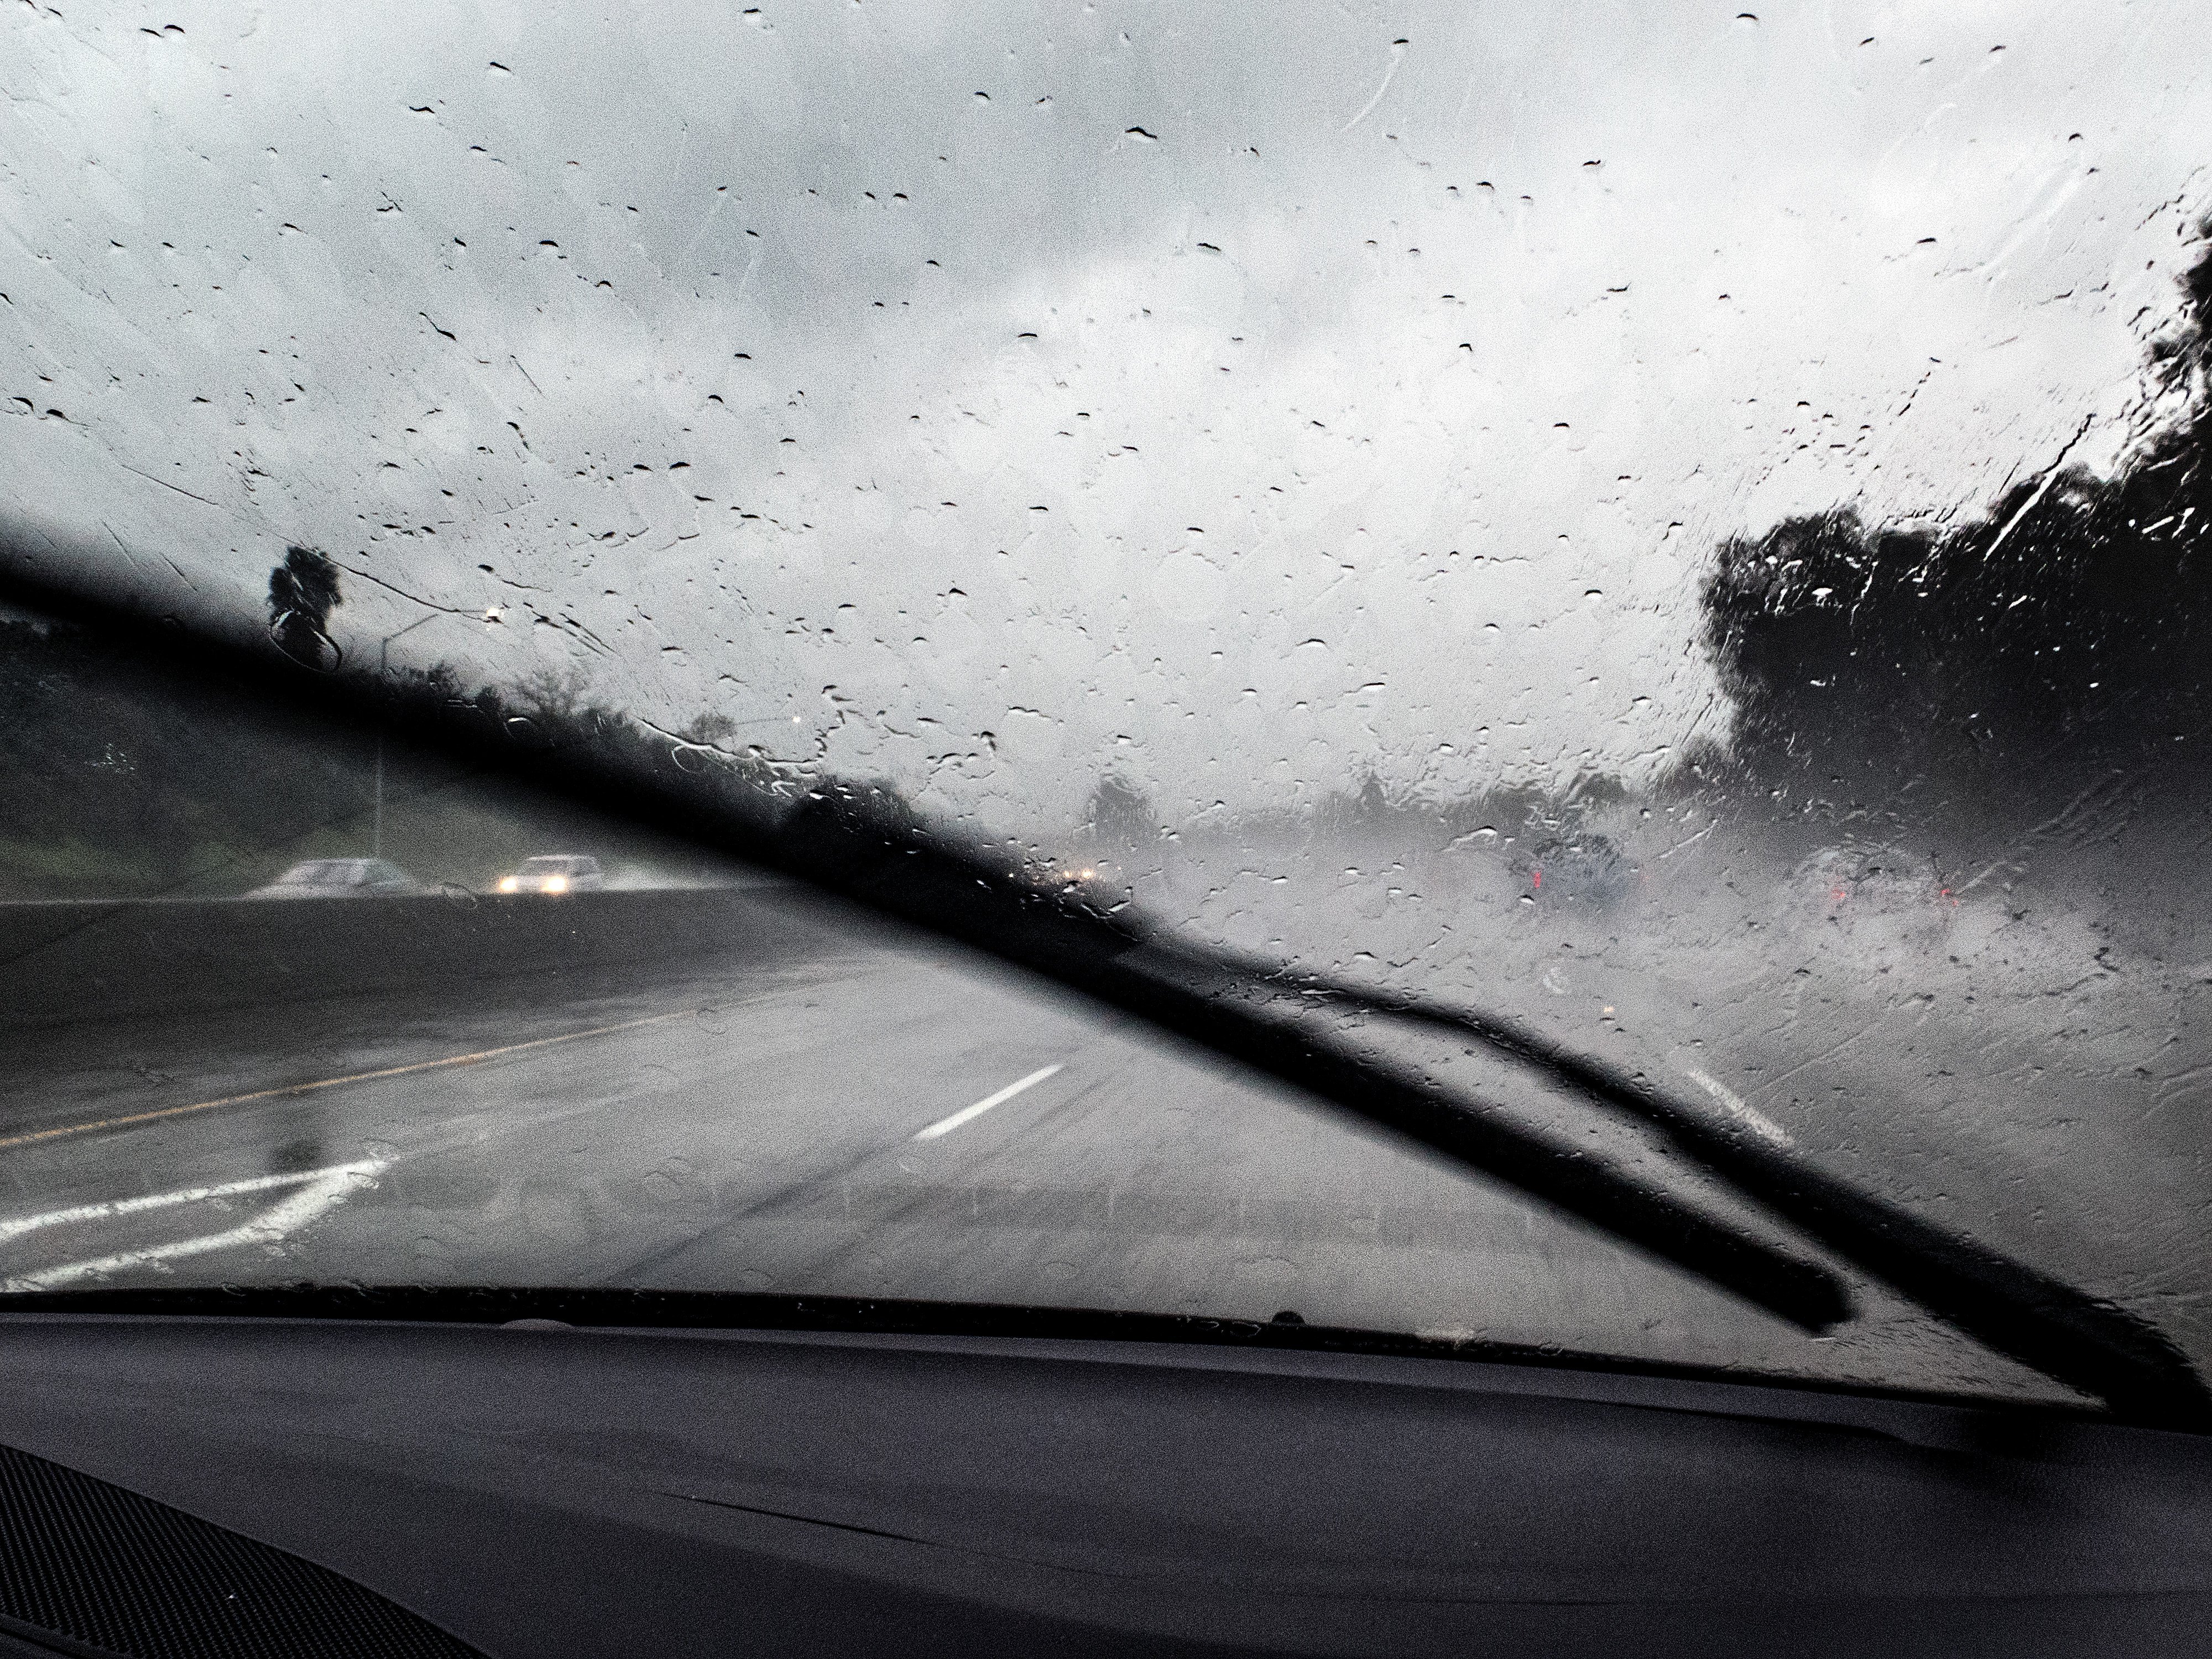 Непогода неправда. Дождь из окна машины. Лобовое стекло в каплях дождя. Дождик на стекле машины. Вид из окна машины дождь.